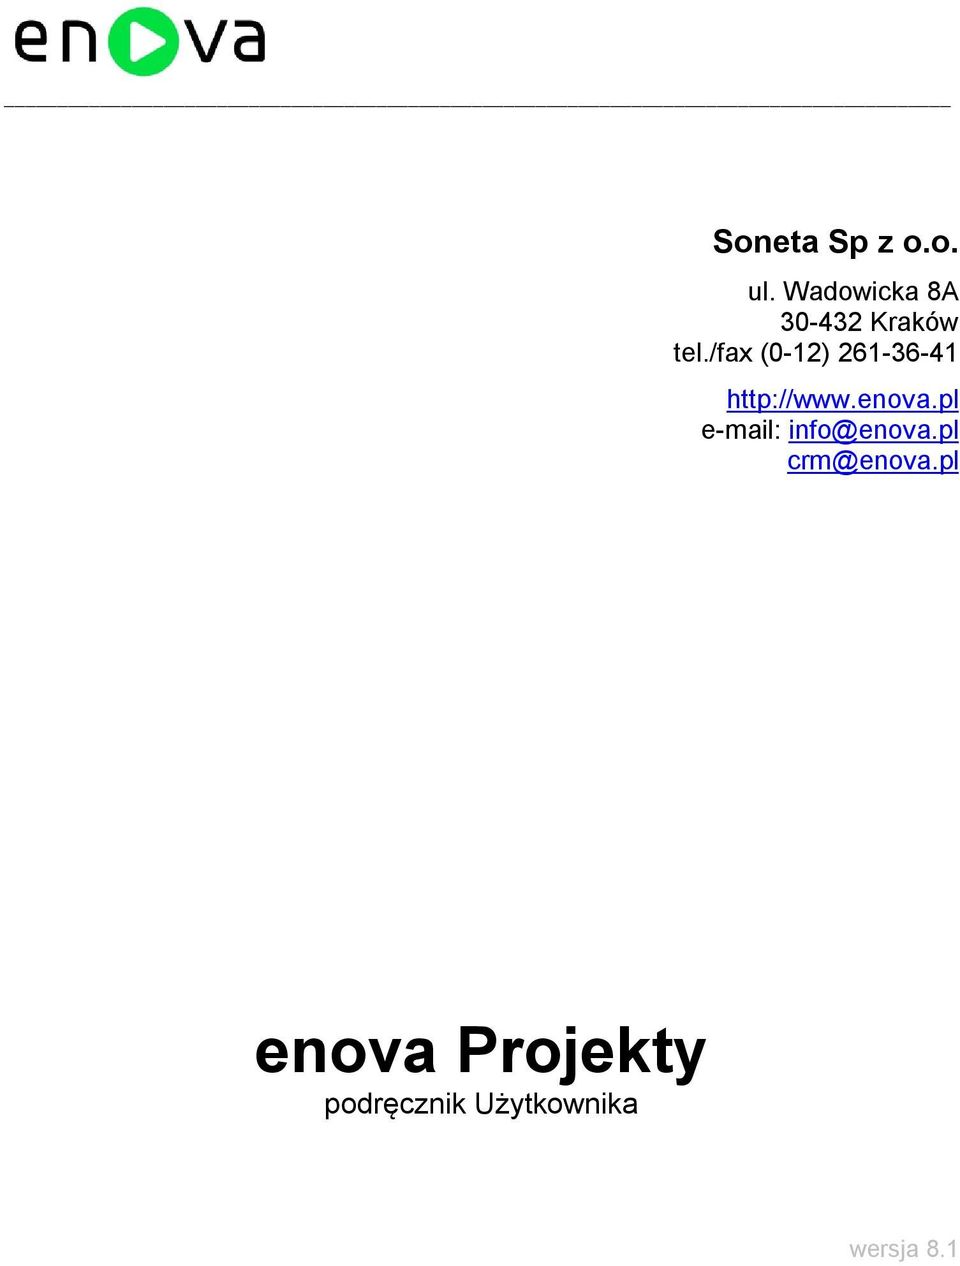 /fax (0-12) 261-36-41 http://www.enova.